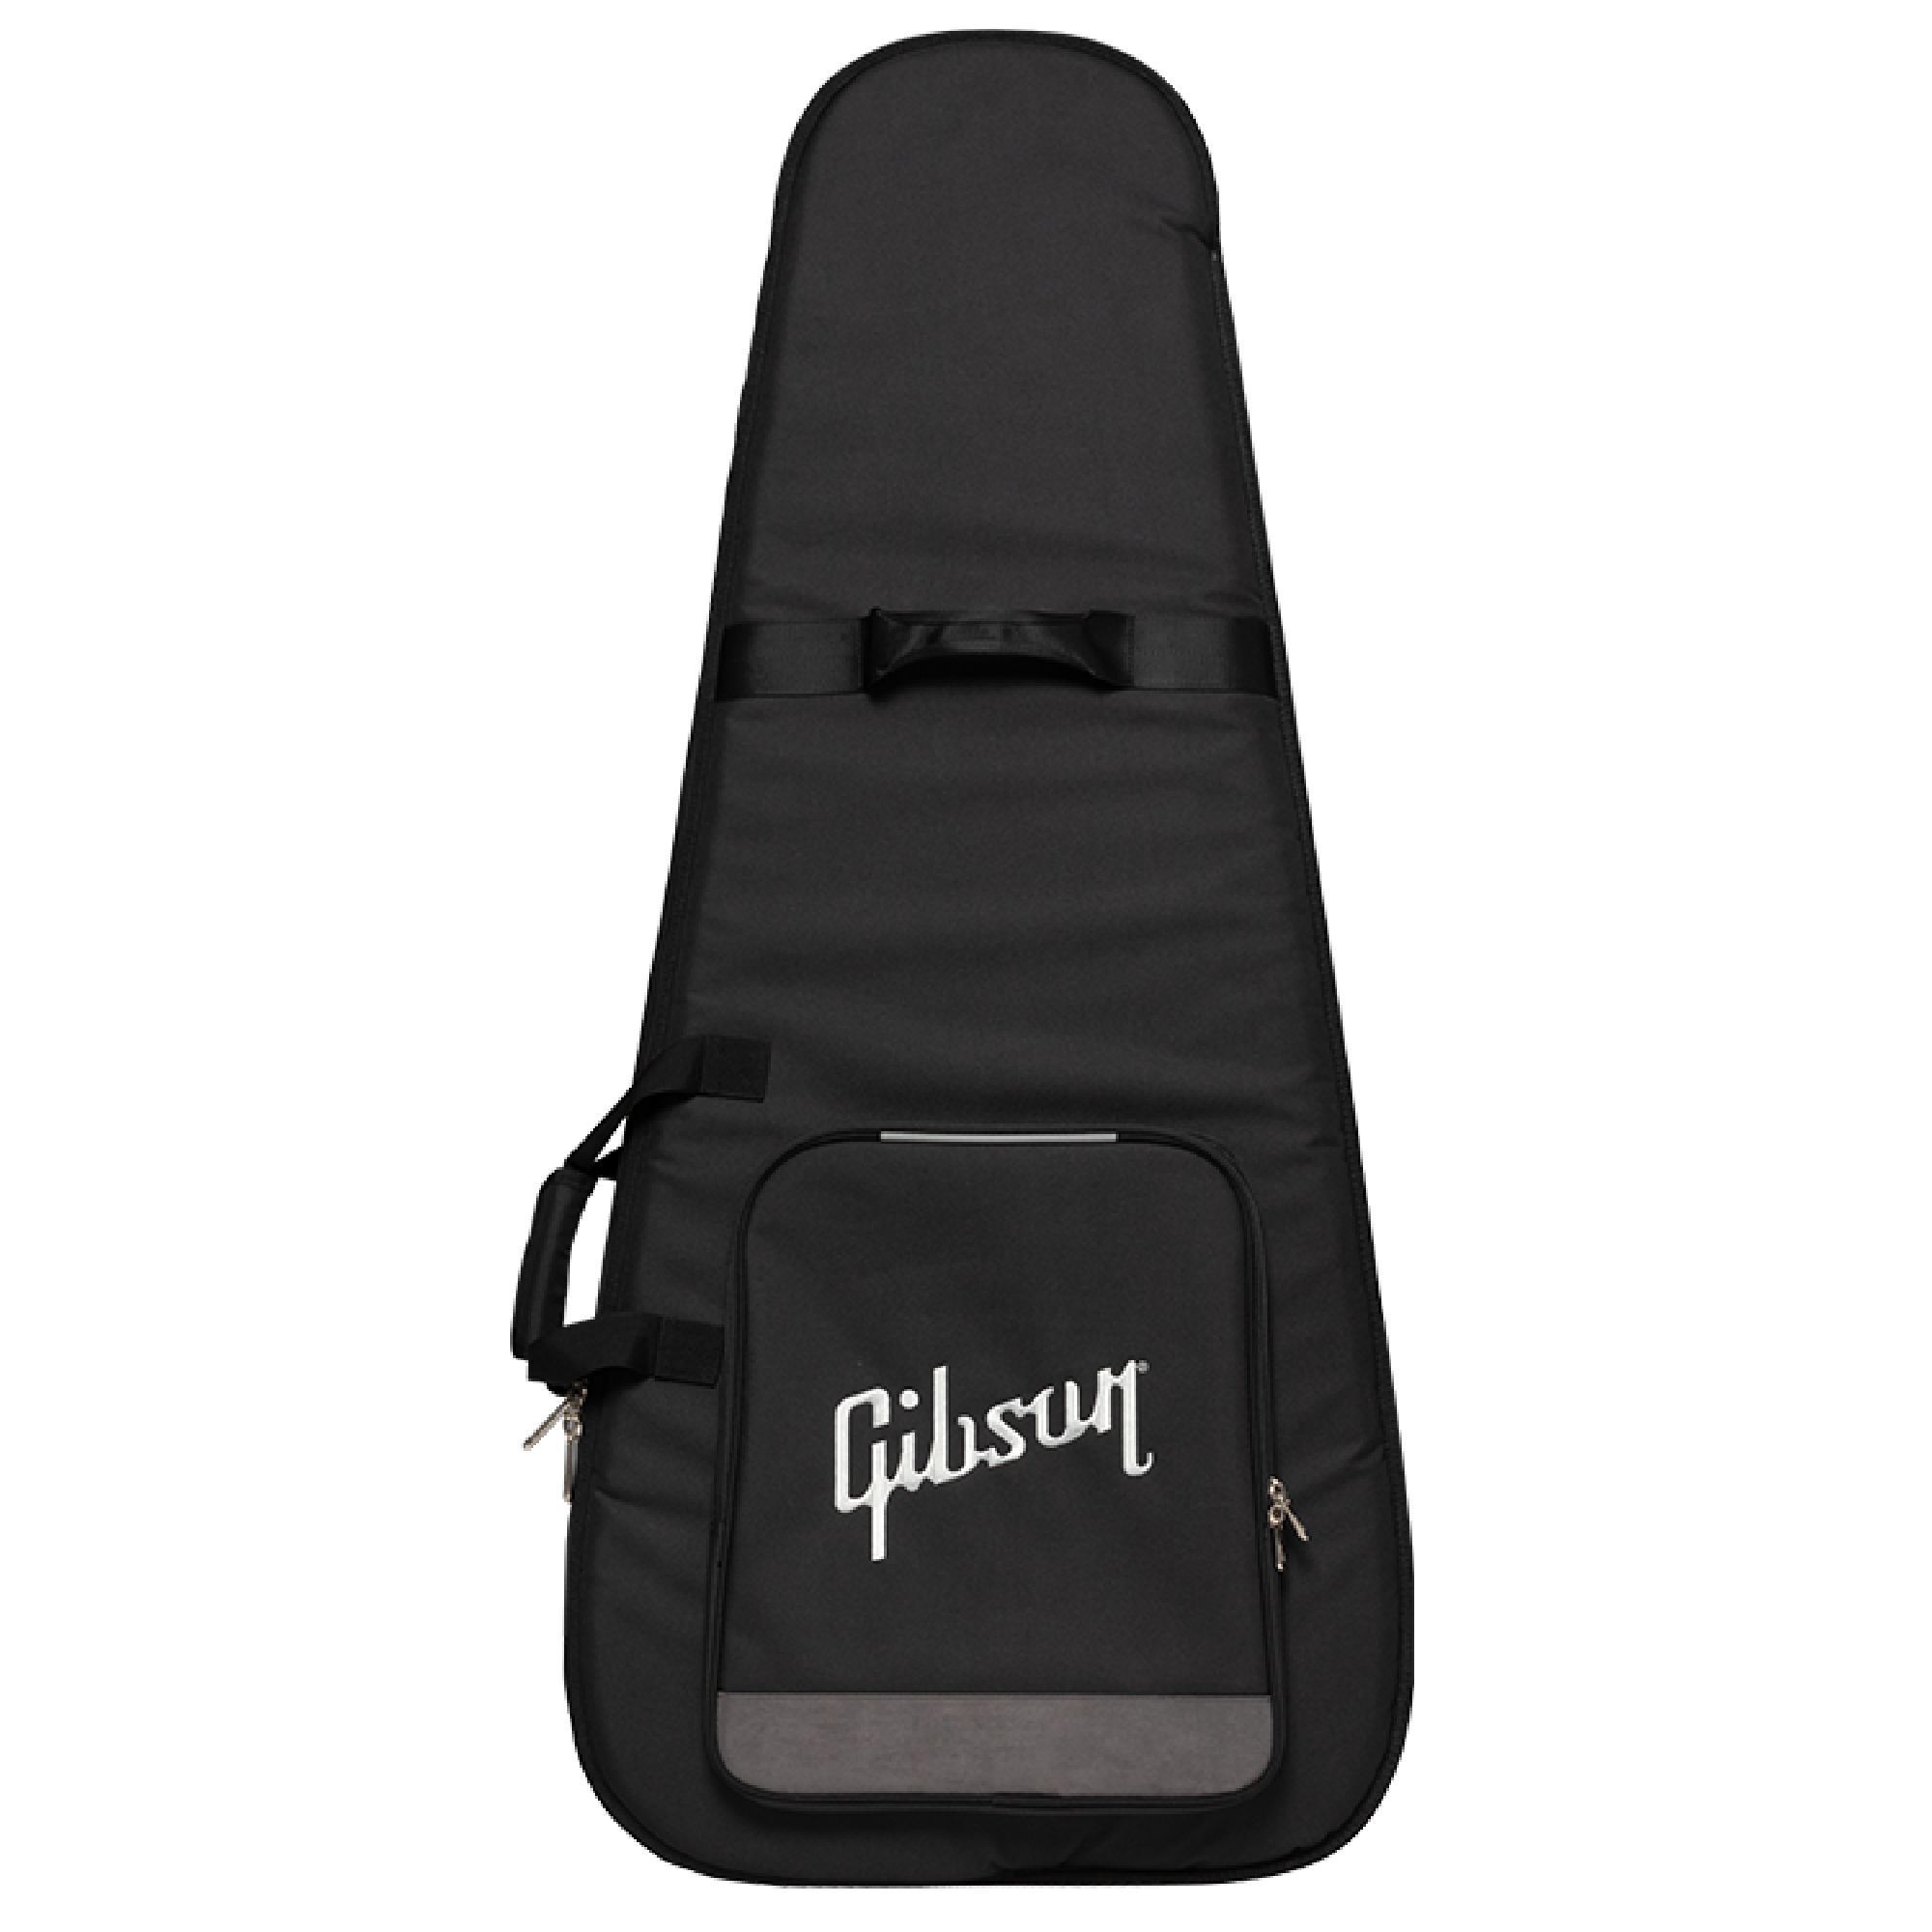 Gibson Premium Gigbag, Designer Black Чехлы и кейсы для гитар